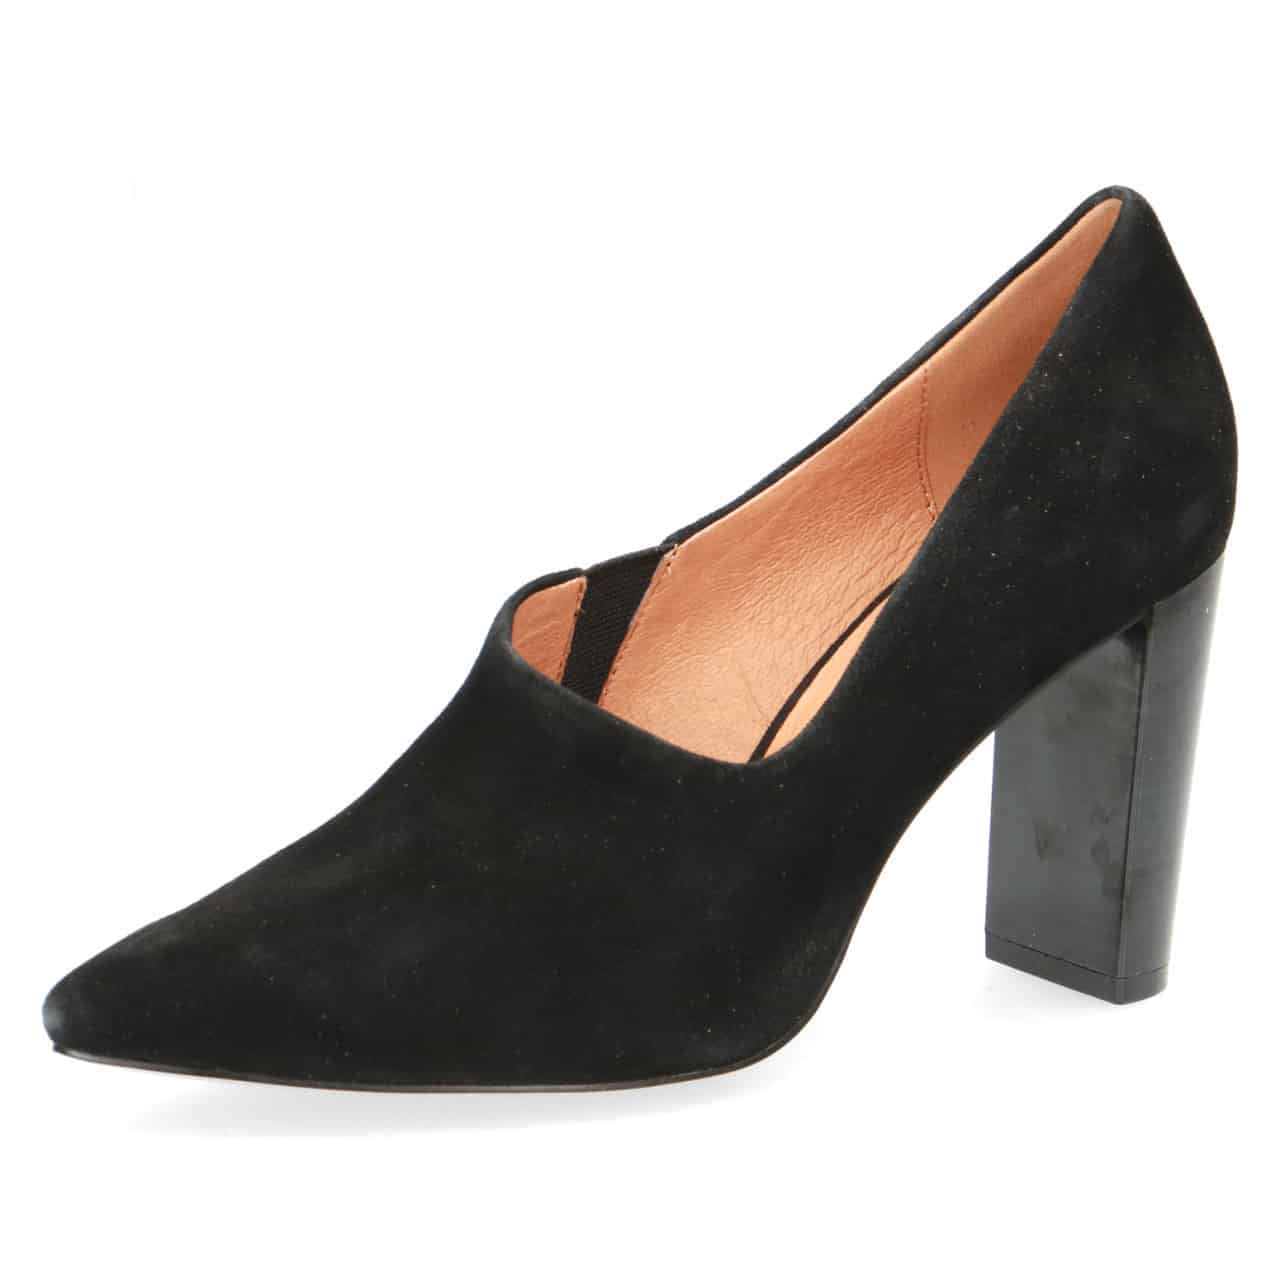 Caprice Women's 24402 Suede Pump Heel Shoes Black